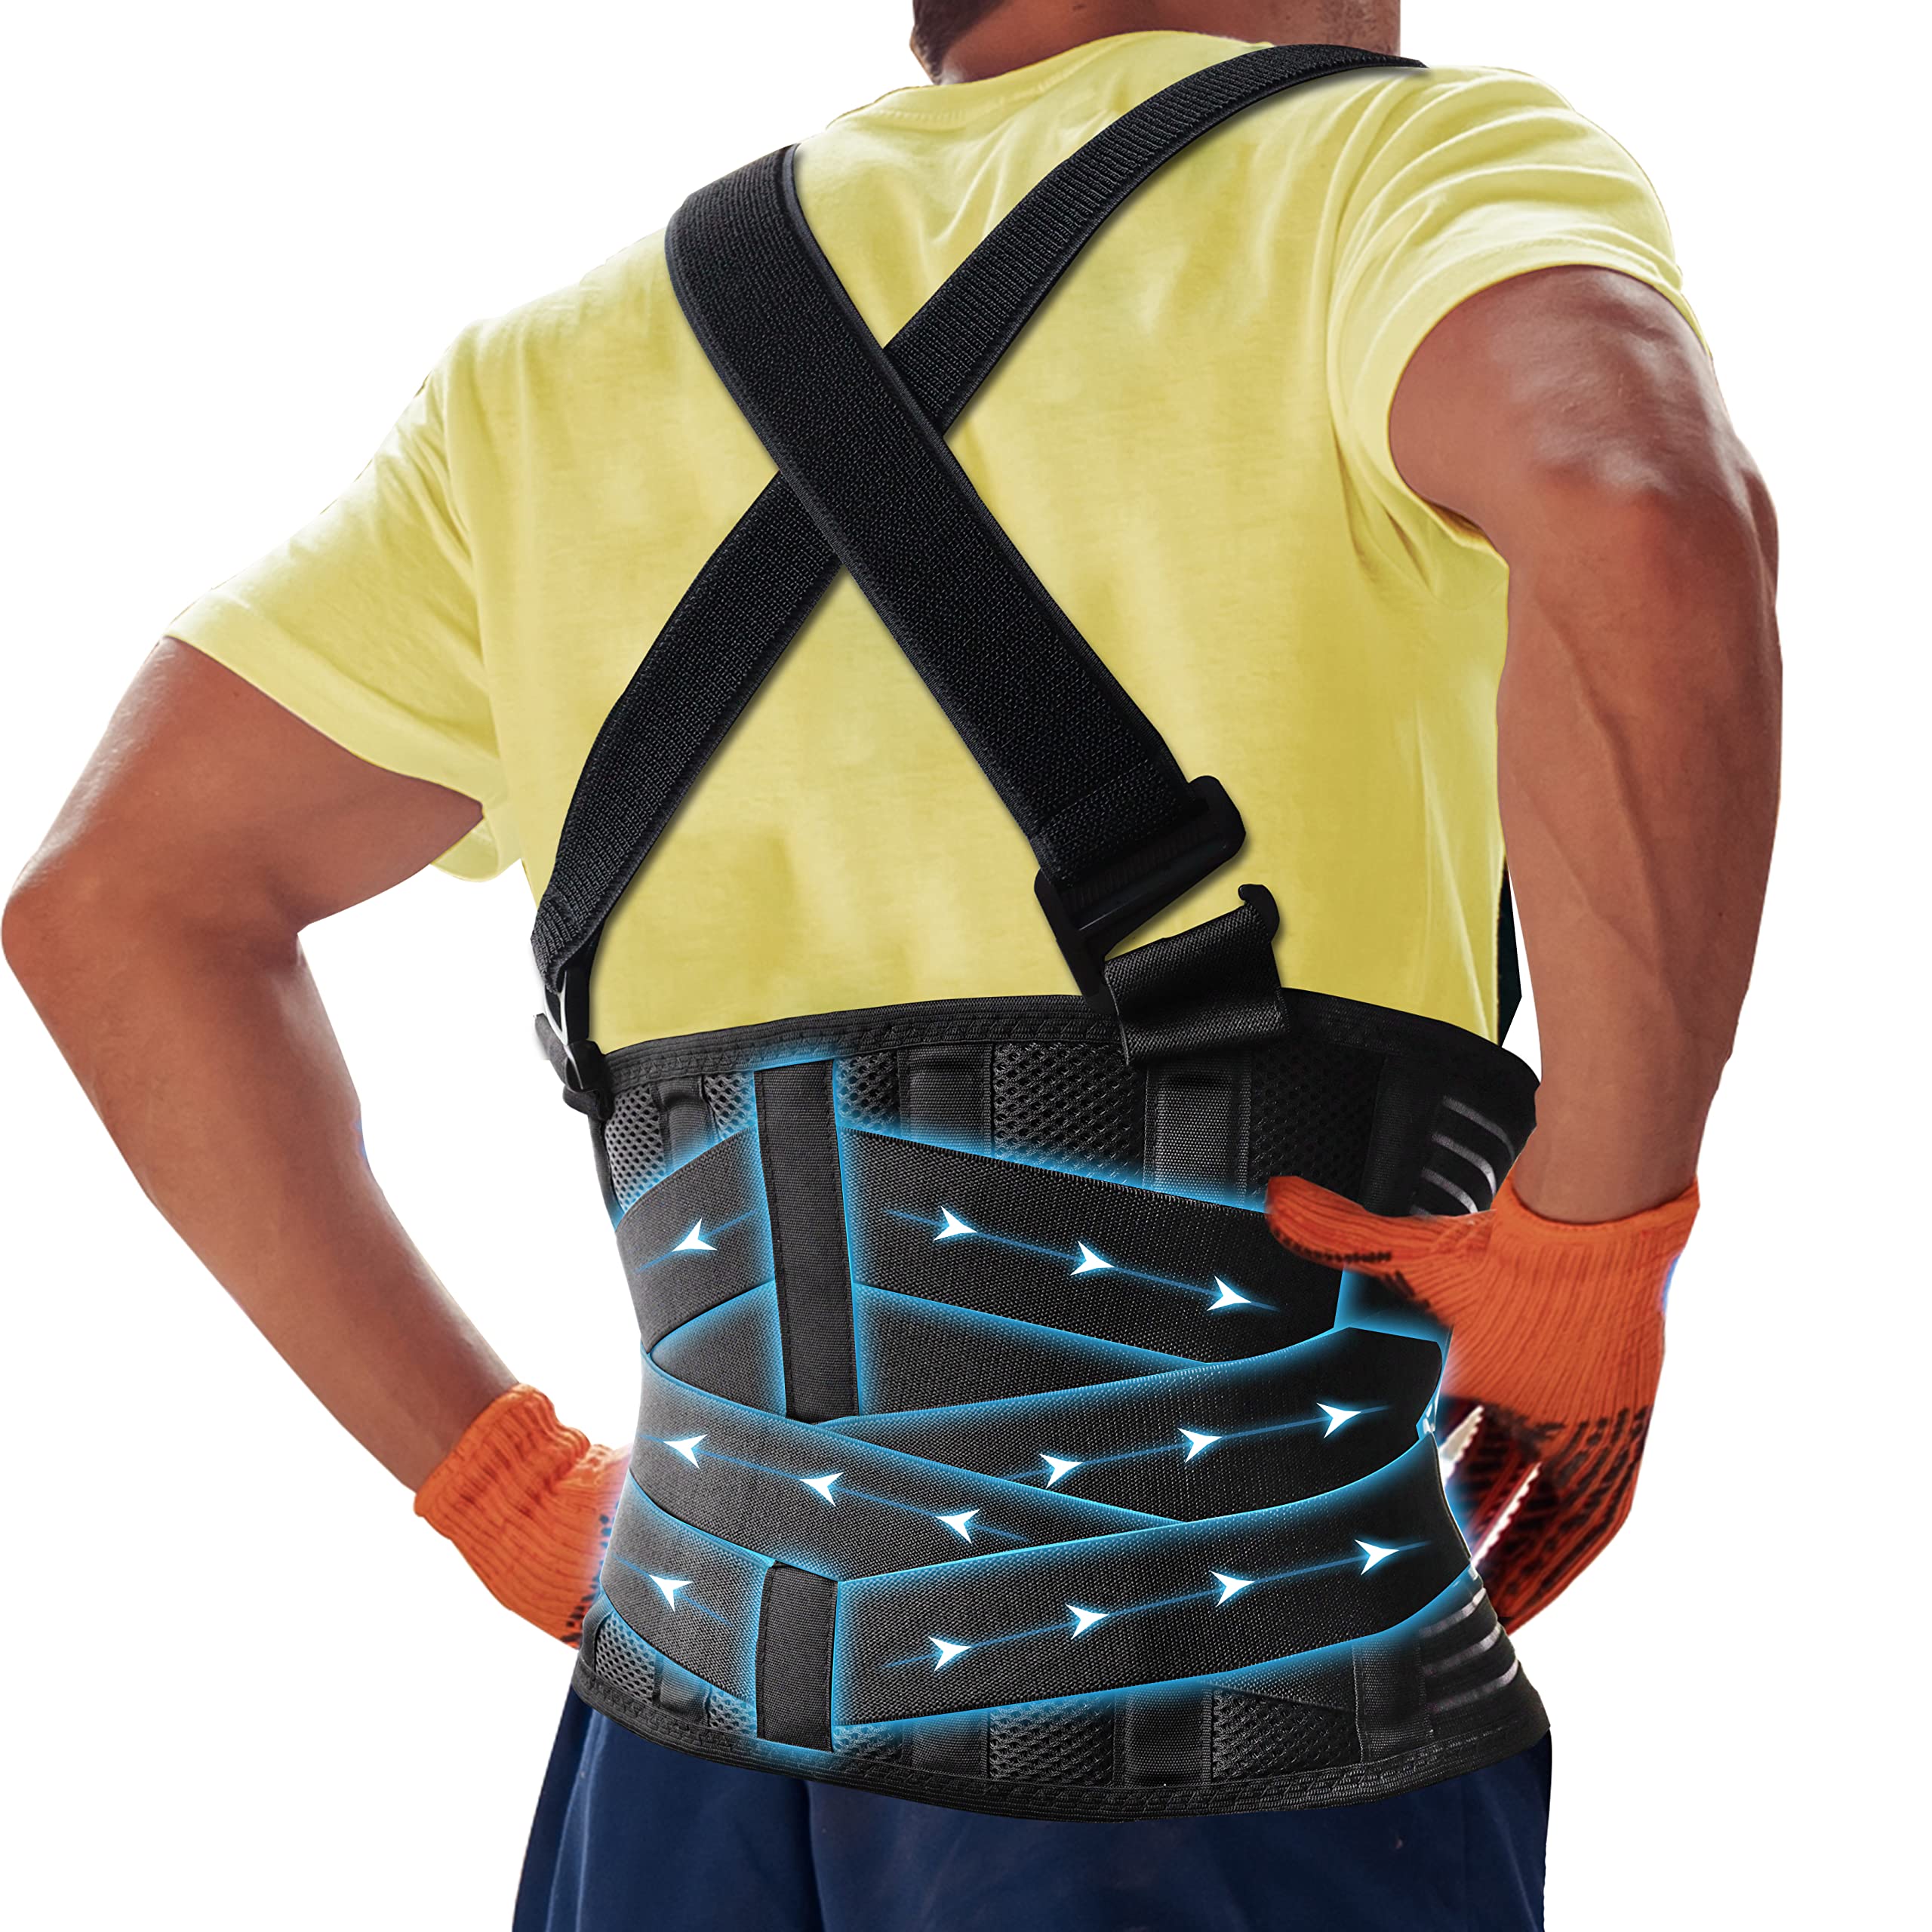 Back Brace, Belts, Straps & Posture Corrector